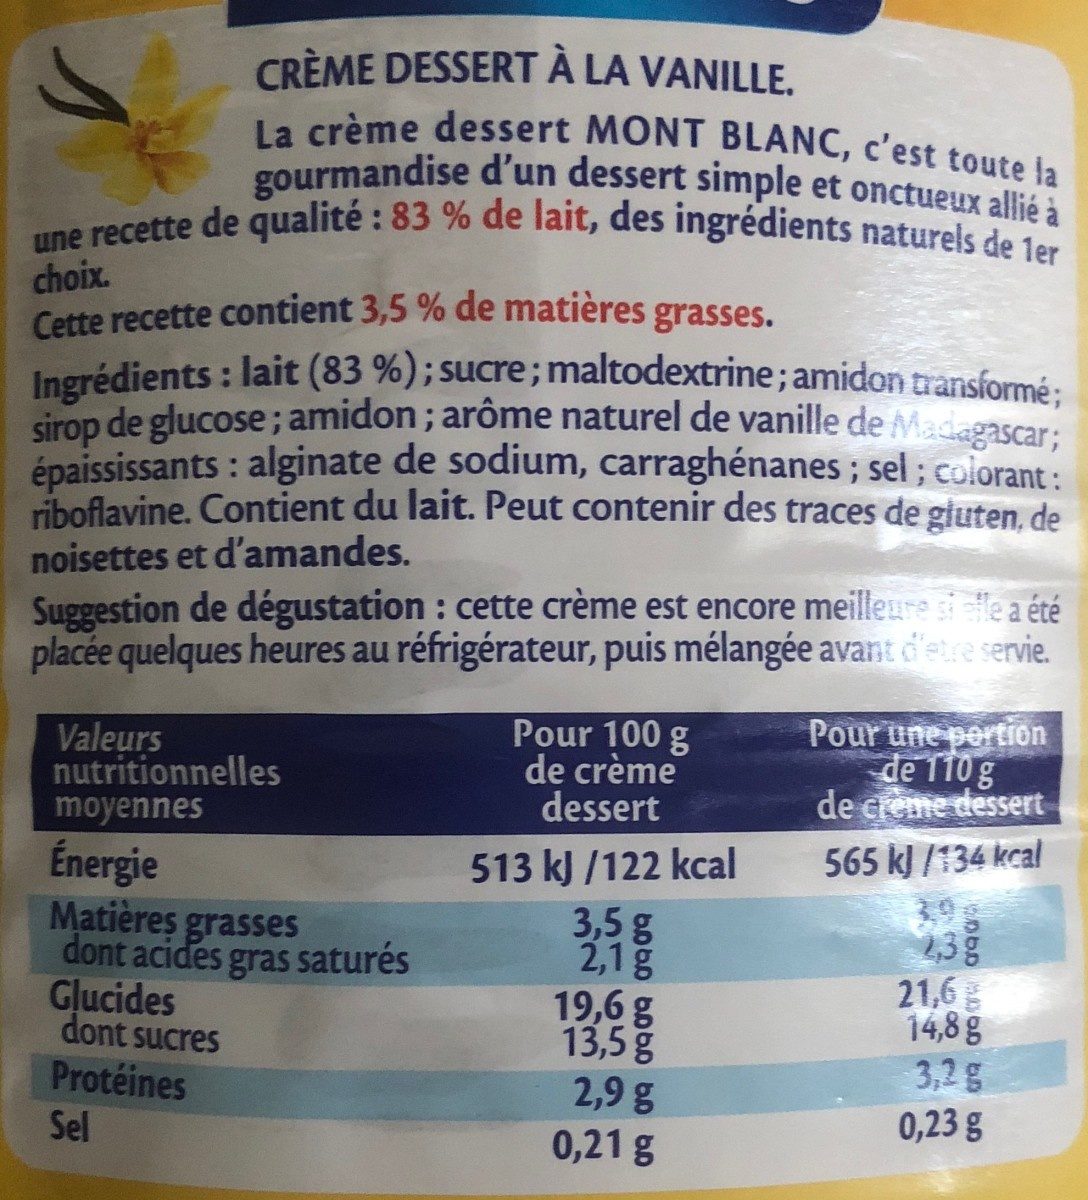 MONT BLANC Crème dessert Boîte Saveur Vanille 4,3kg - حقائق غذائية - fr